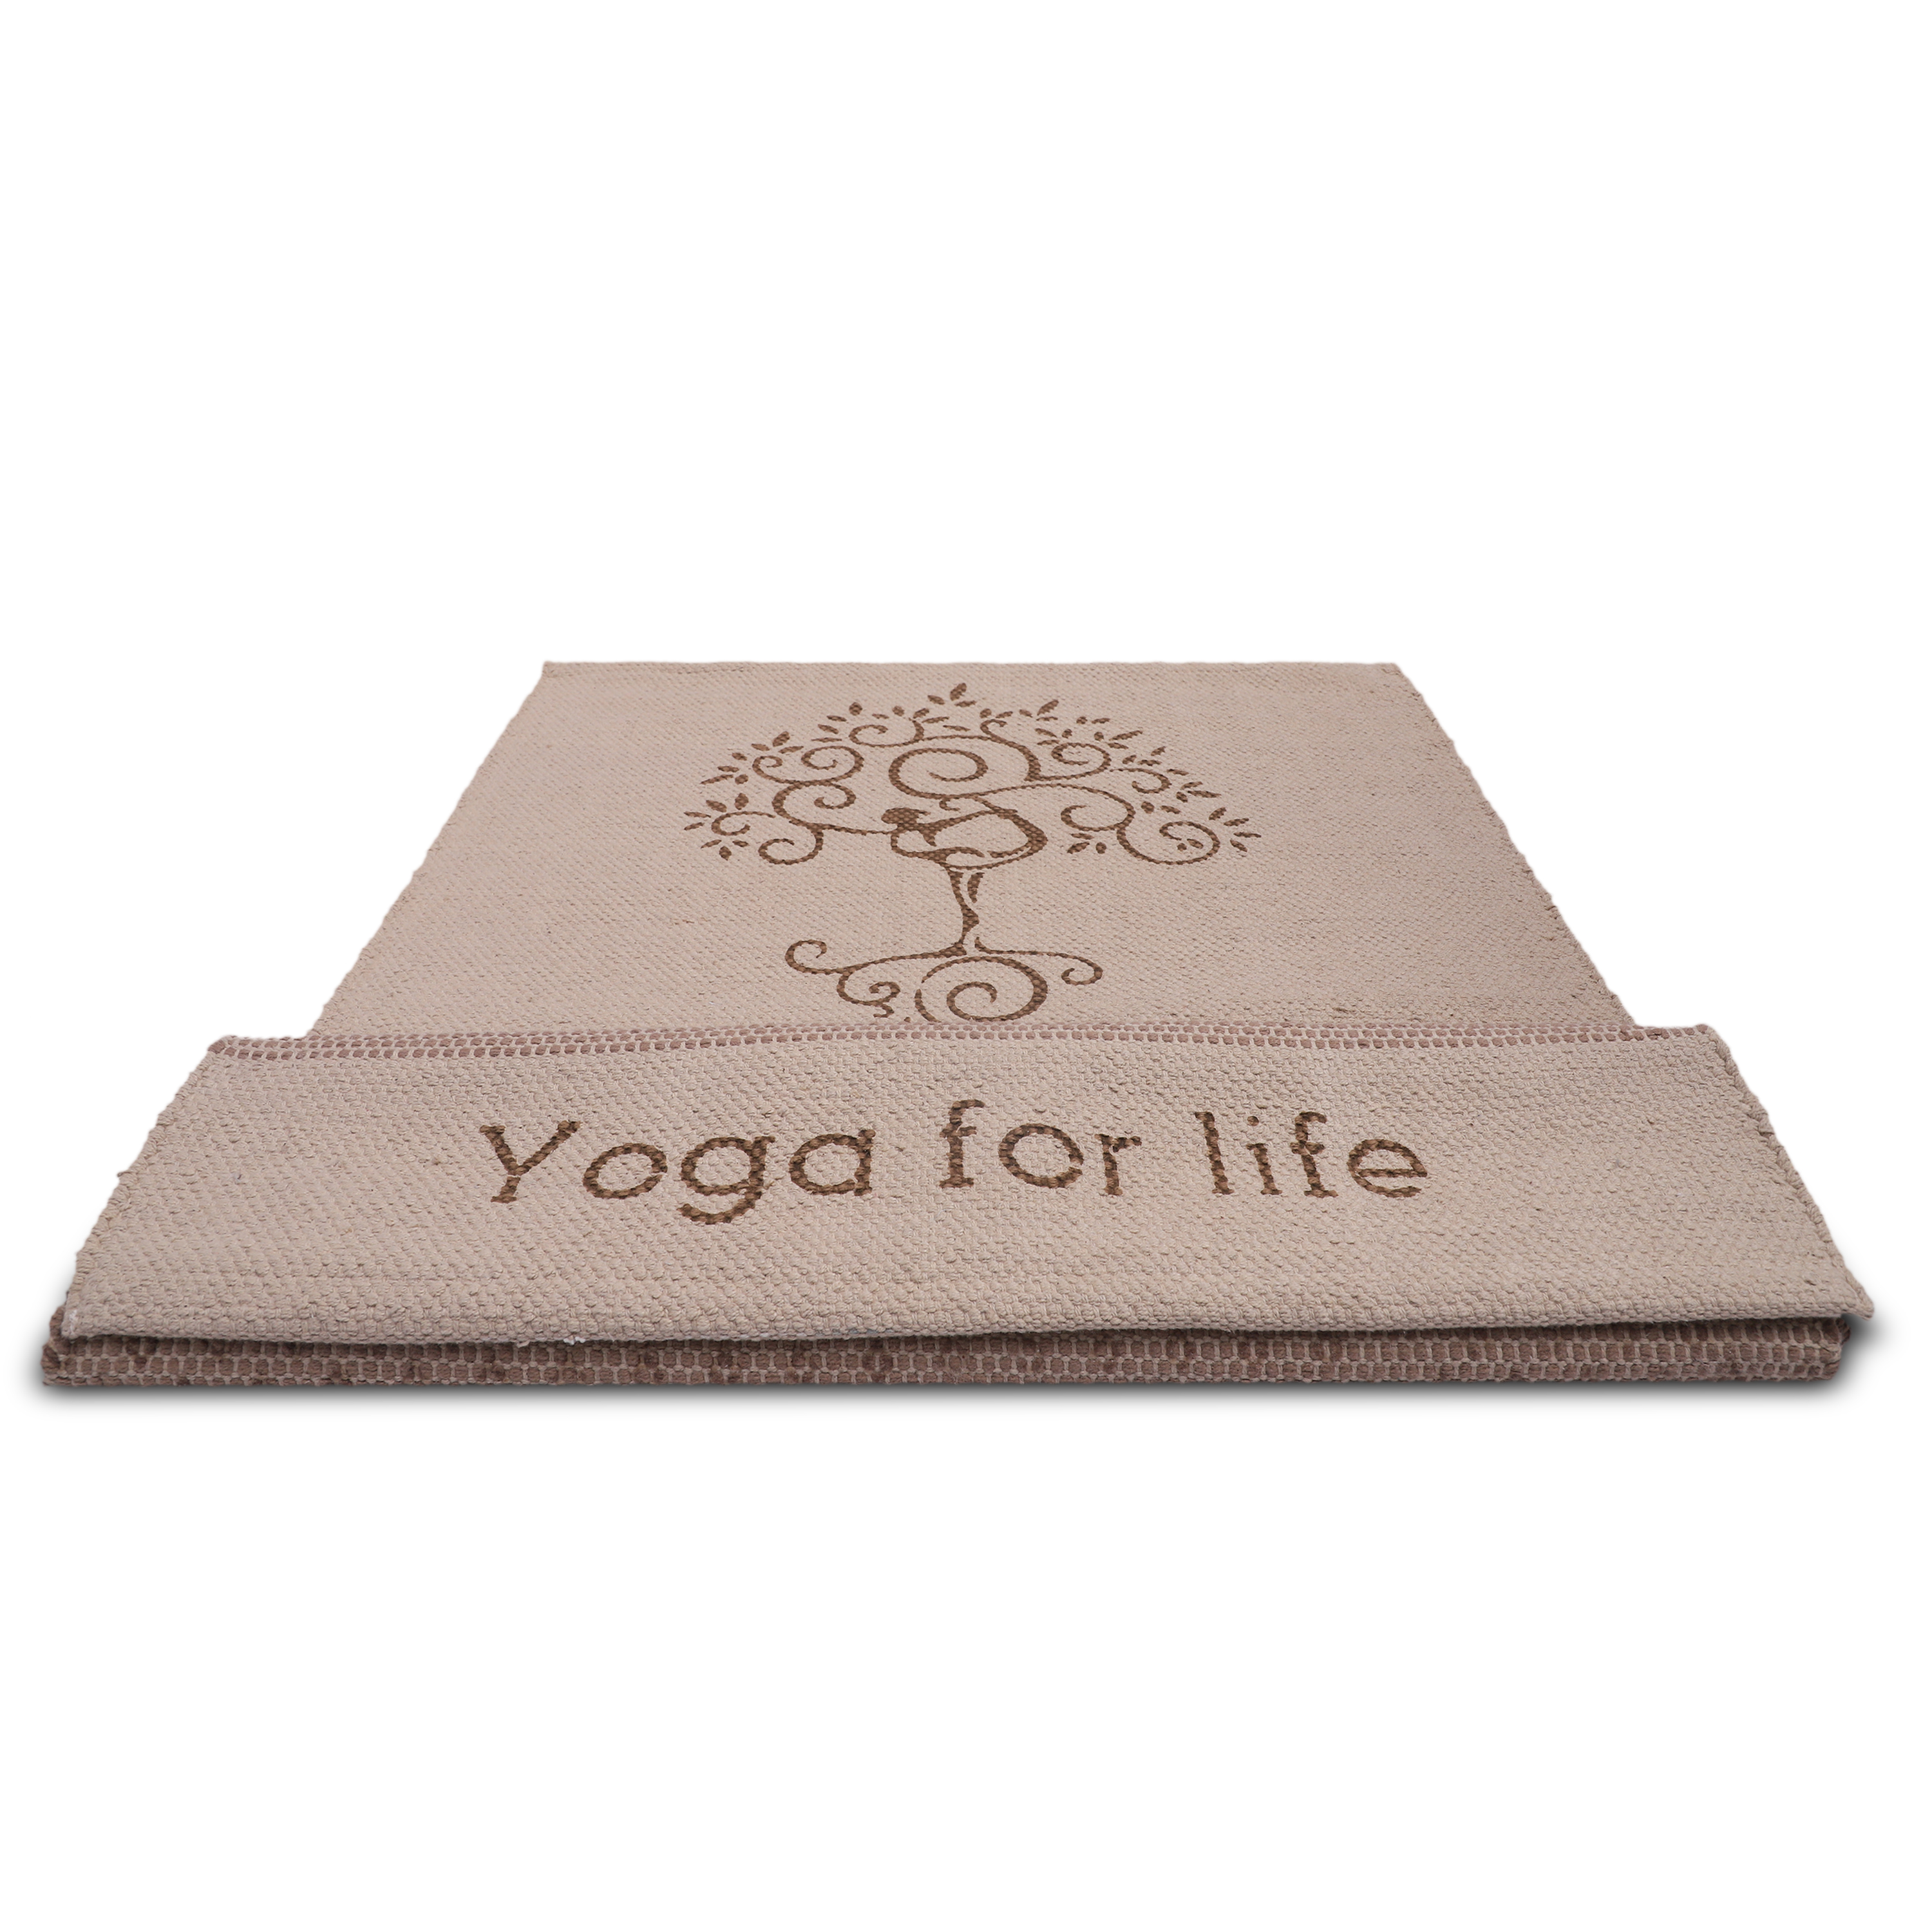 Premium Yoga Mat at Affordable Price, Yoga Mat Online